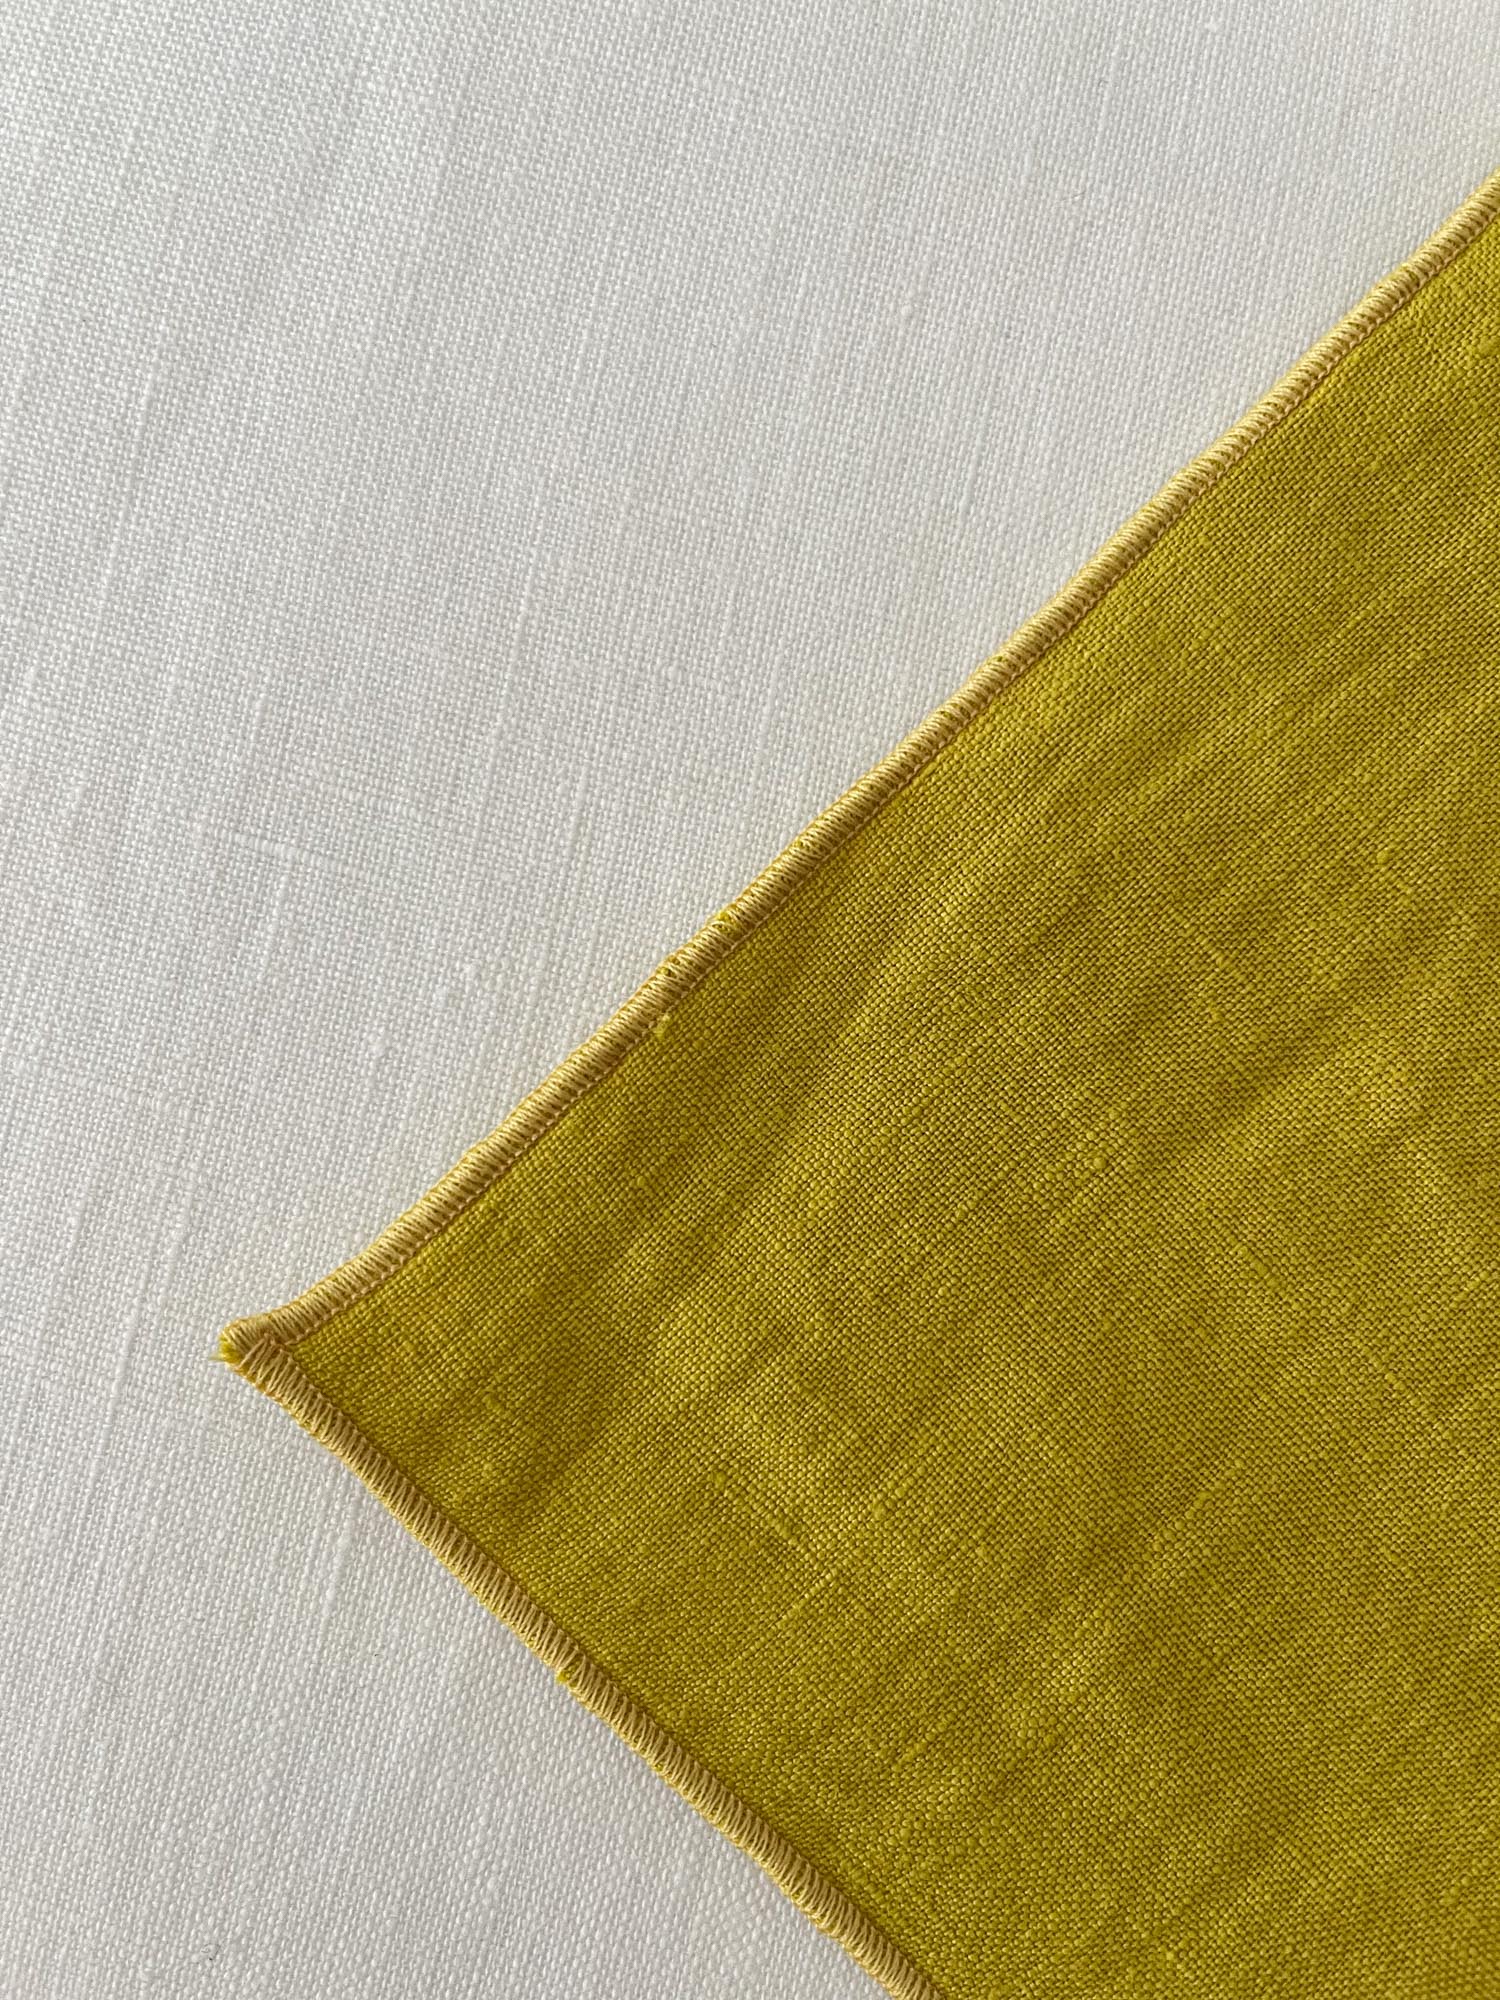 Untersetzer aus chartreuse gelbem Leinen mit Rollsaum - 4er-Set - Linen Notes